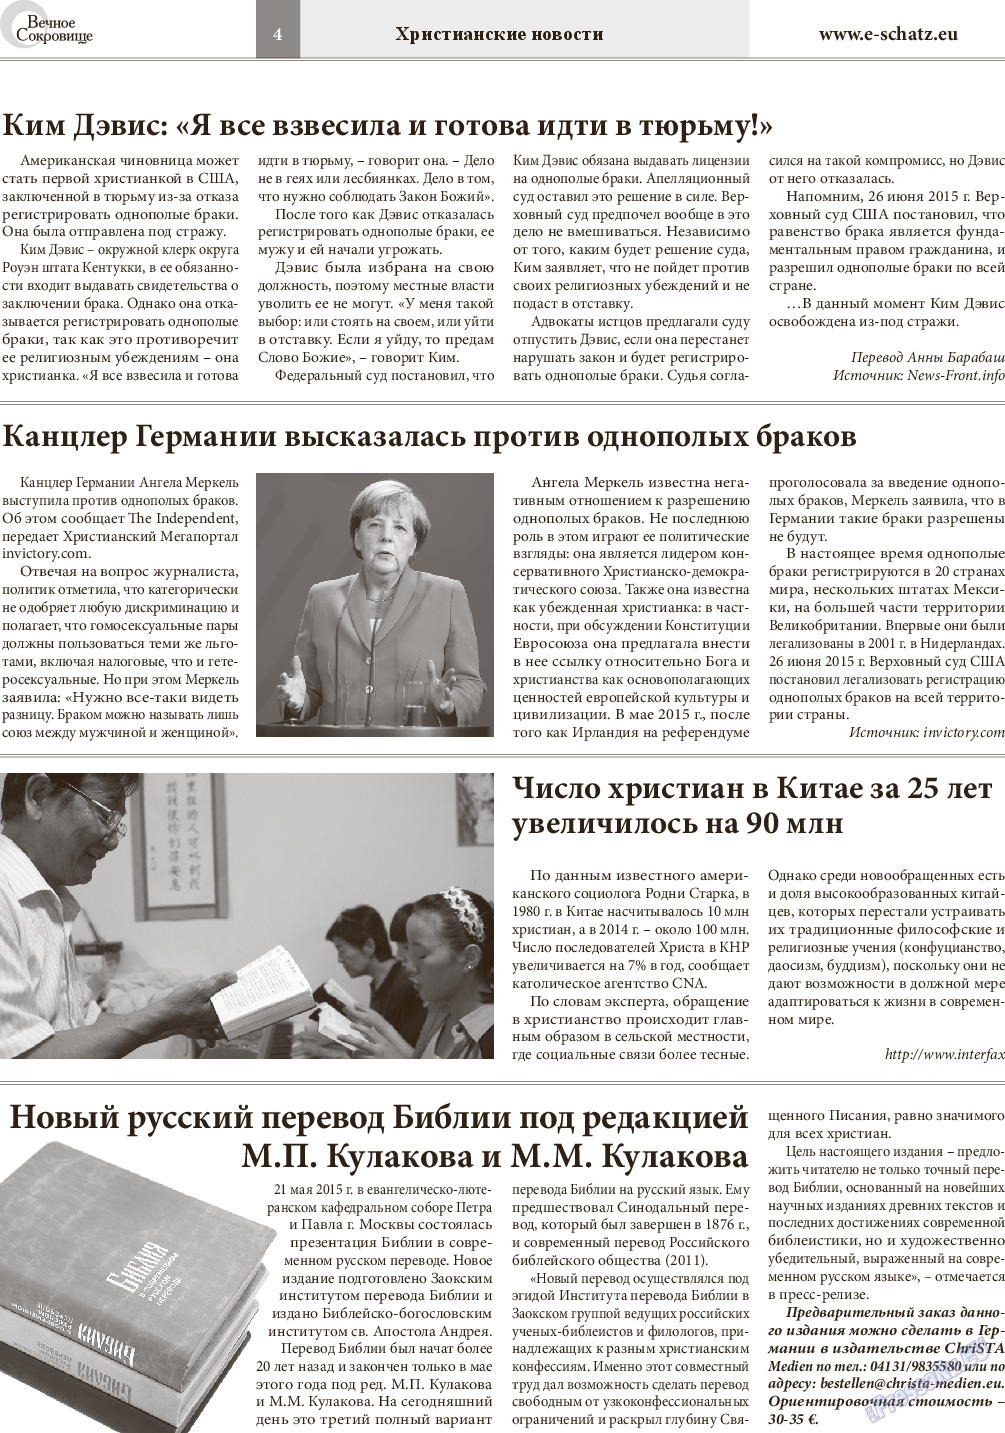 Вечное сокровище, газета. 2015 №5 стр.4